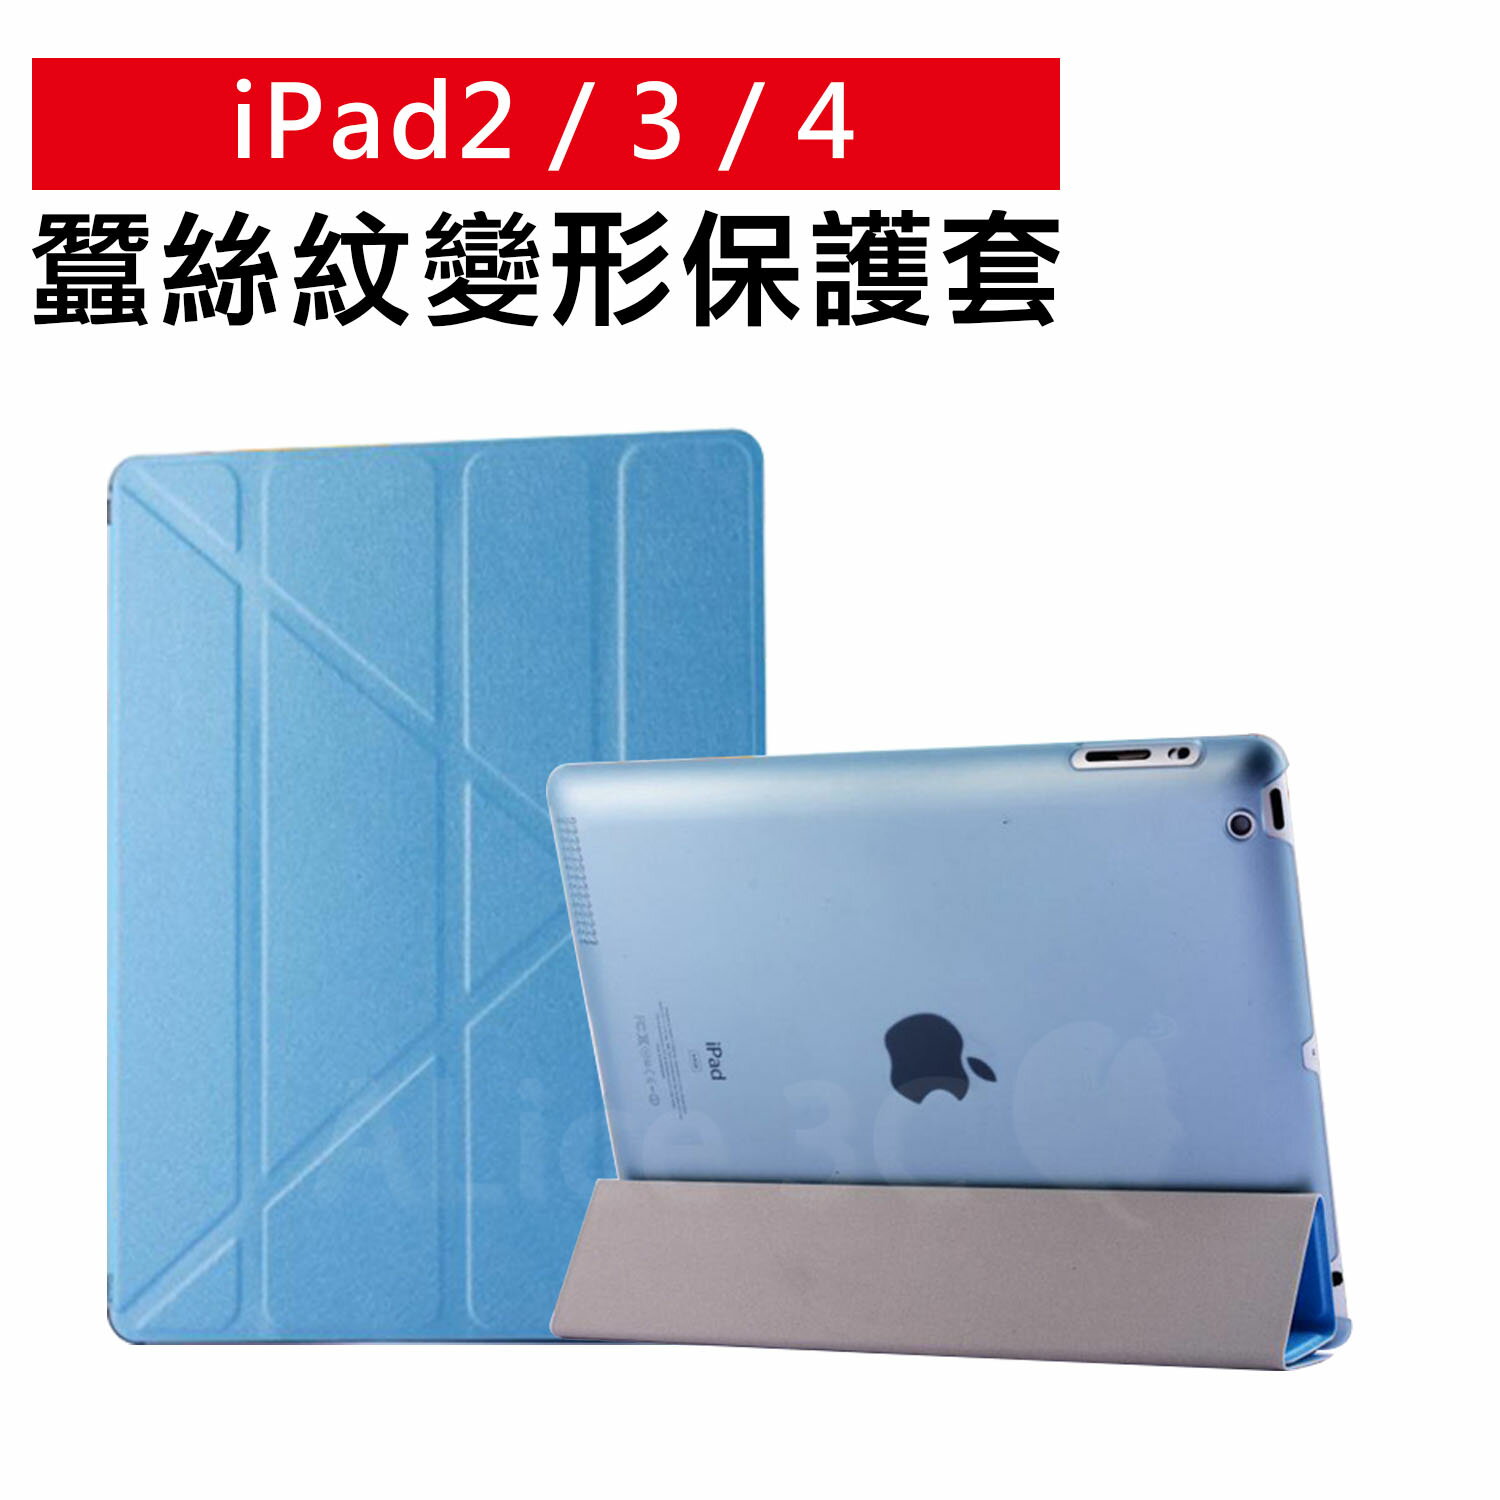 iPad 2 / 3 / 4 專用 蠶絲紋 變形金剛皮套 【C-APL-P50】 多角度摺疊保護套 立架式皮套 Alice3C  